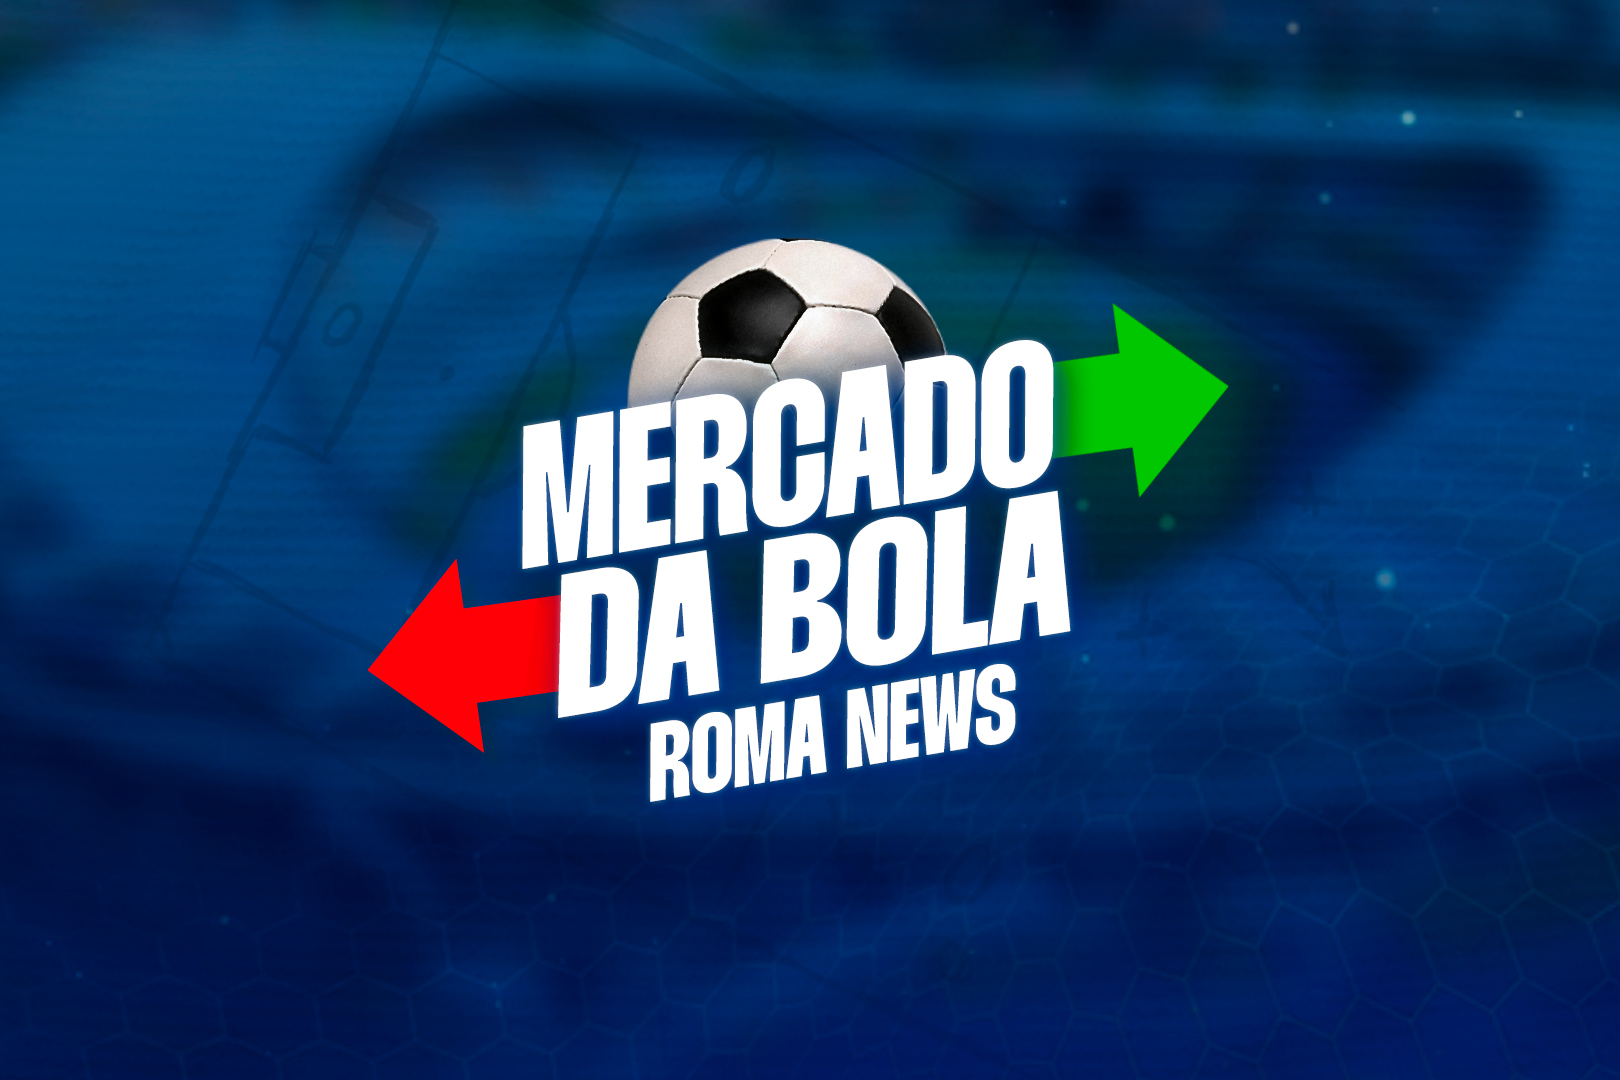 Mercado da bola confira o vai e vem do futebol em tempo real Roma News